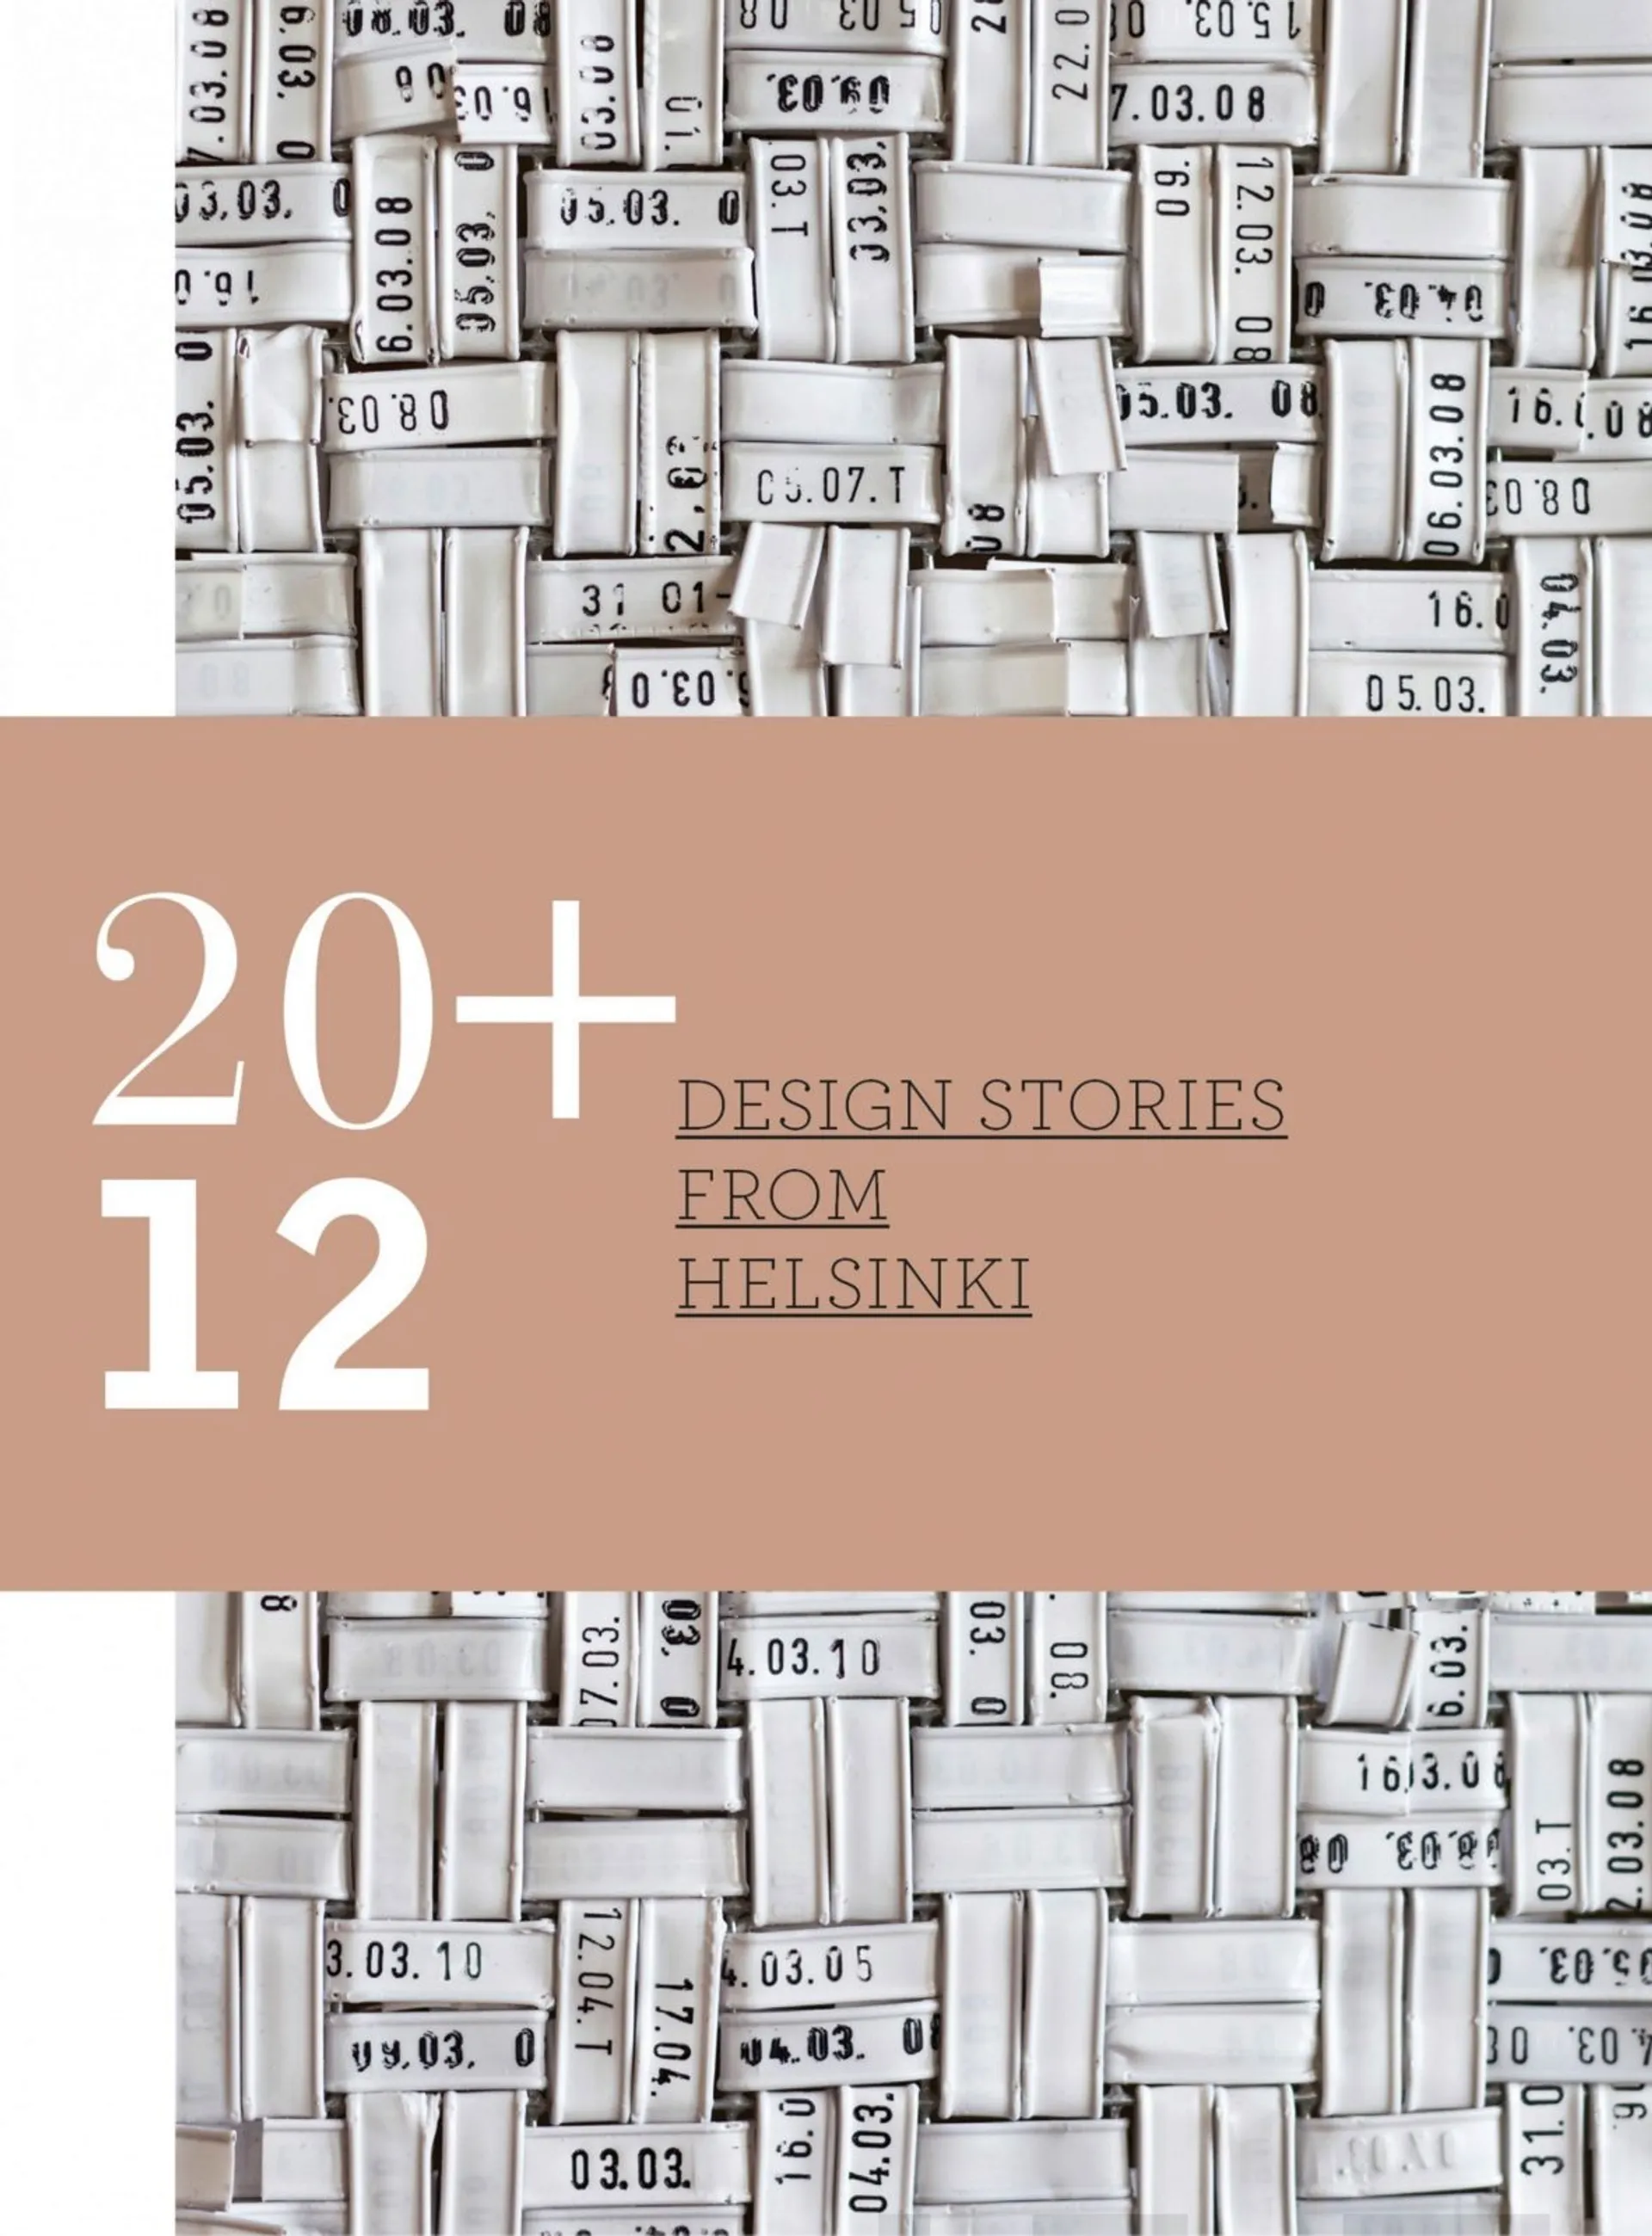 20 + 12 Design Stories from Helsinki